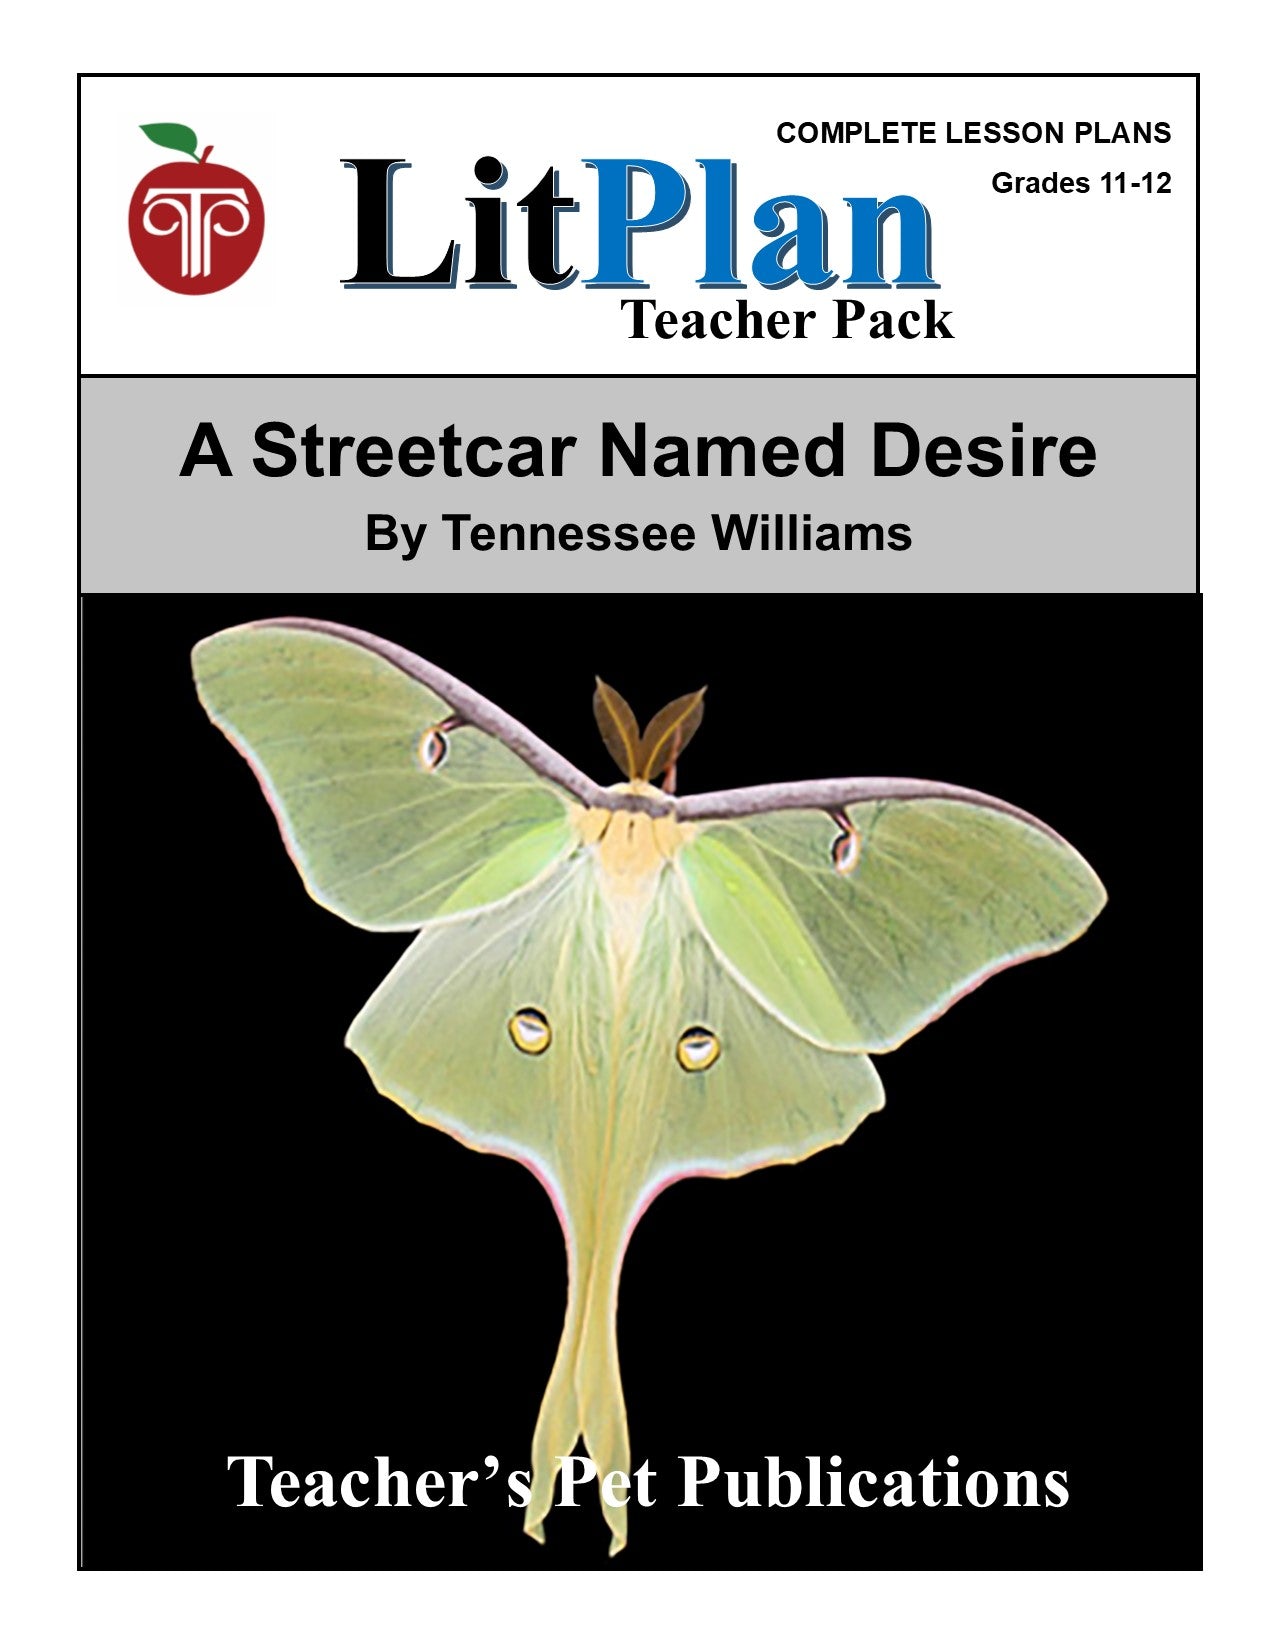 A Streetcar Named Desire: LitPlan Teacher Pack Grades 11-12